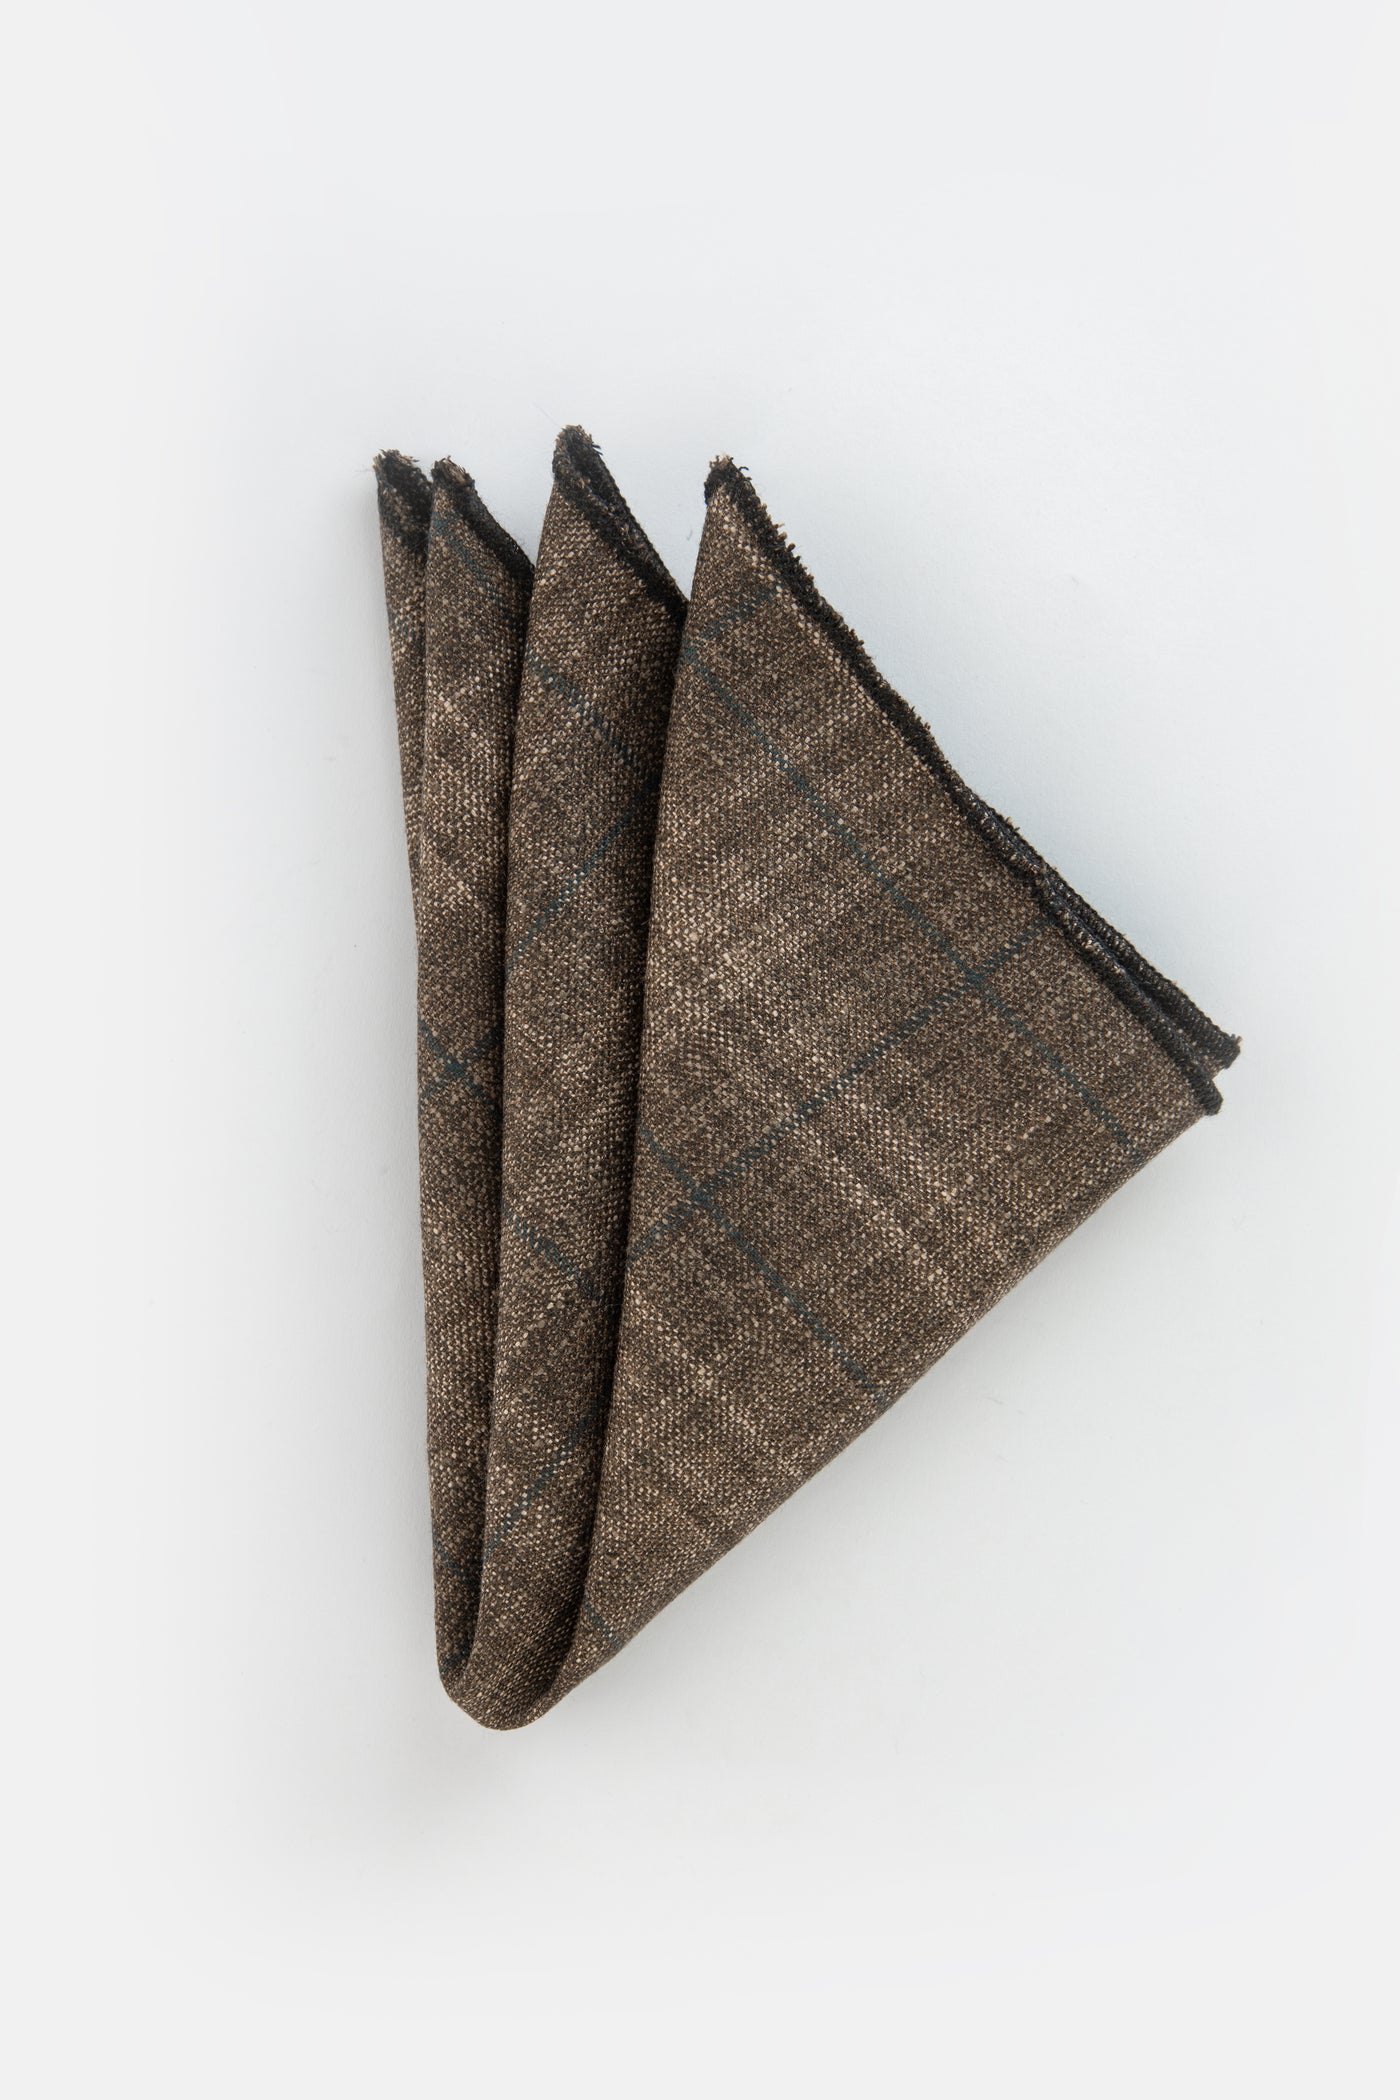 Knitted Brown & Beige Necktie With Handkerchief